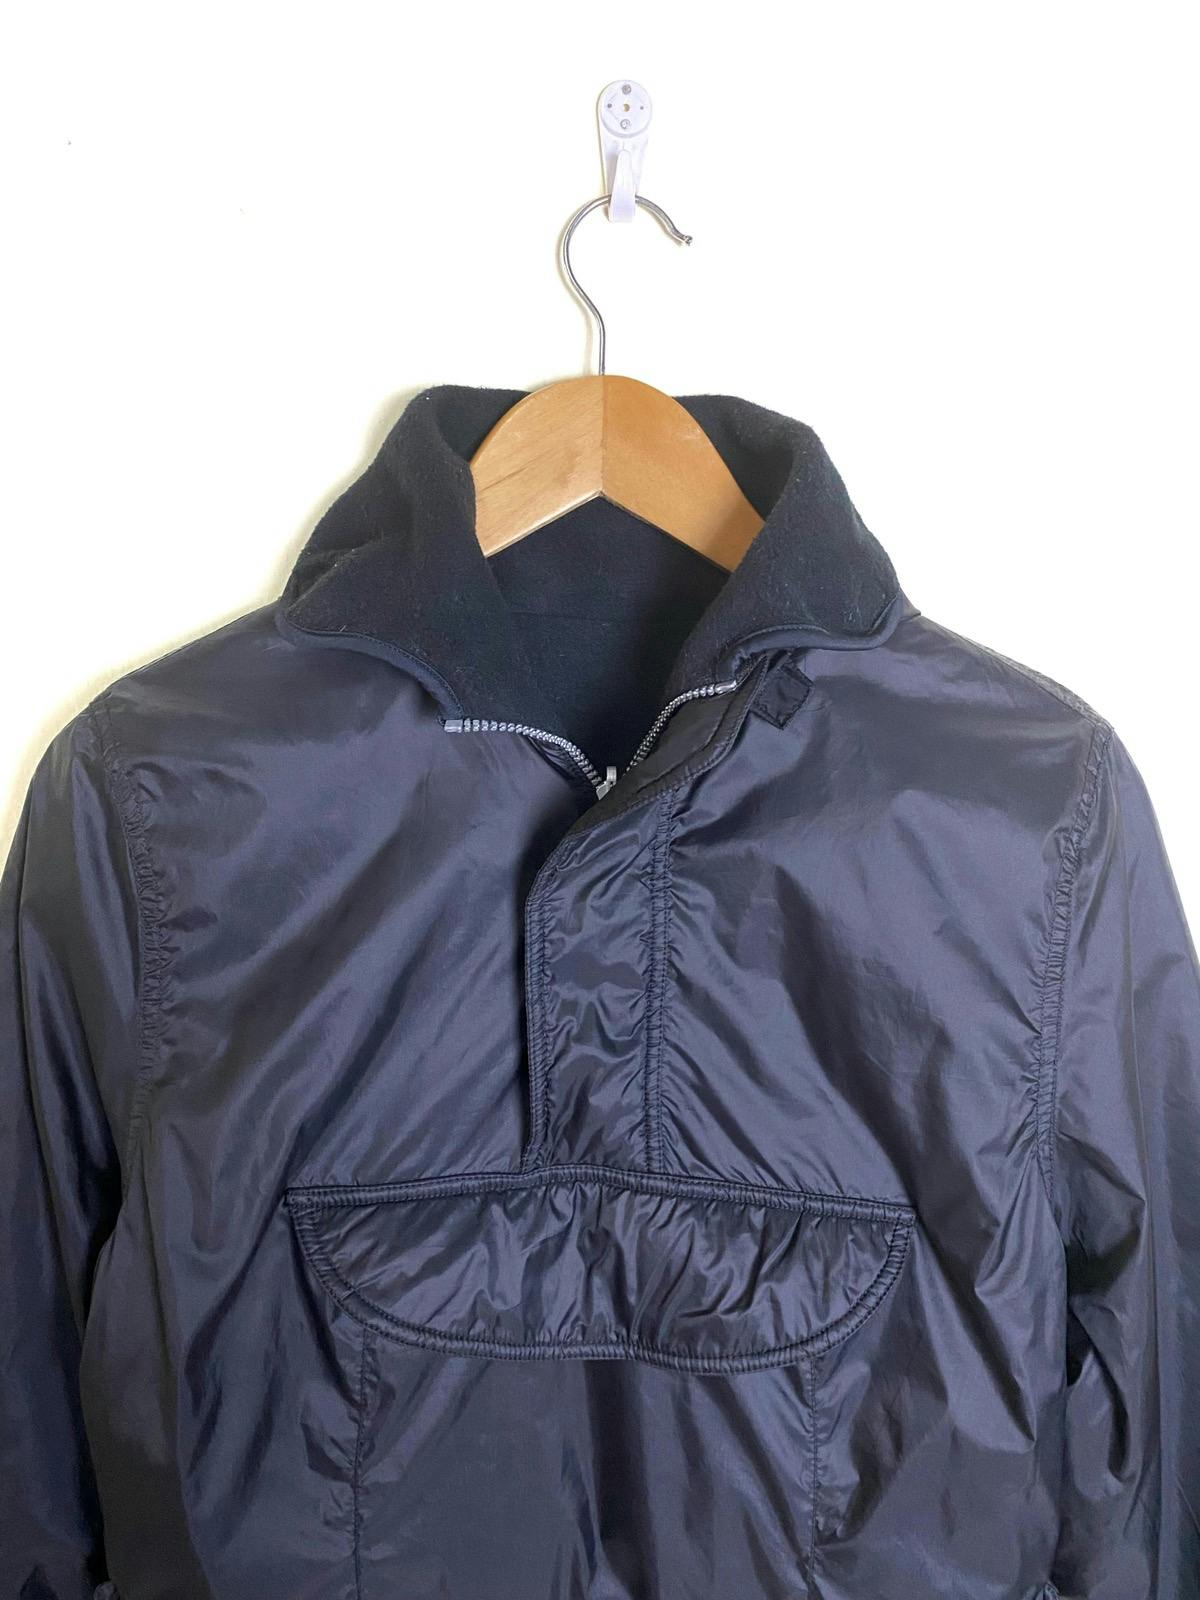 Vtg MONCLER Grenoble Reversible Anorak Jacket Made in Italy - 2